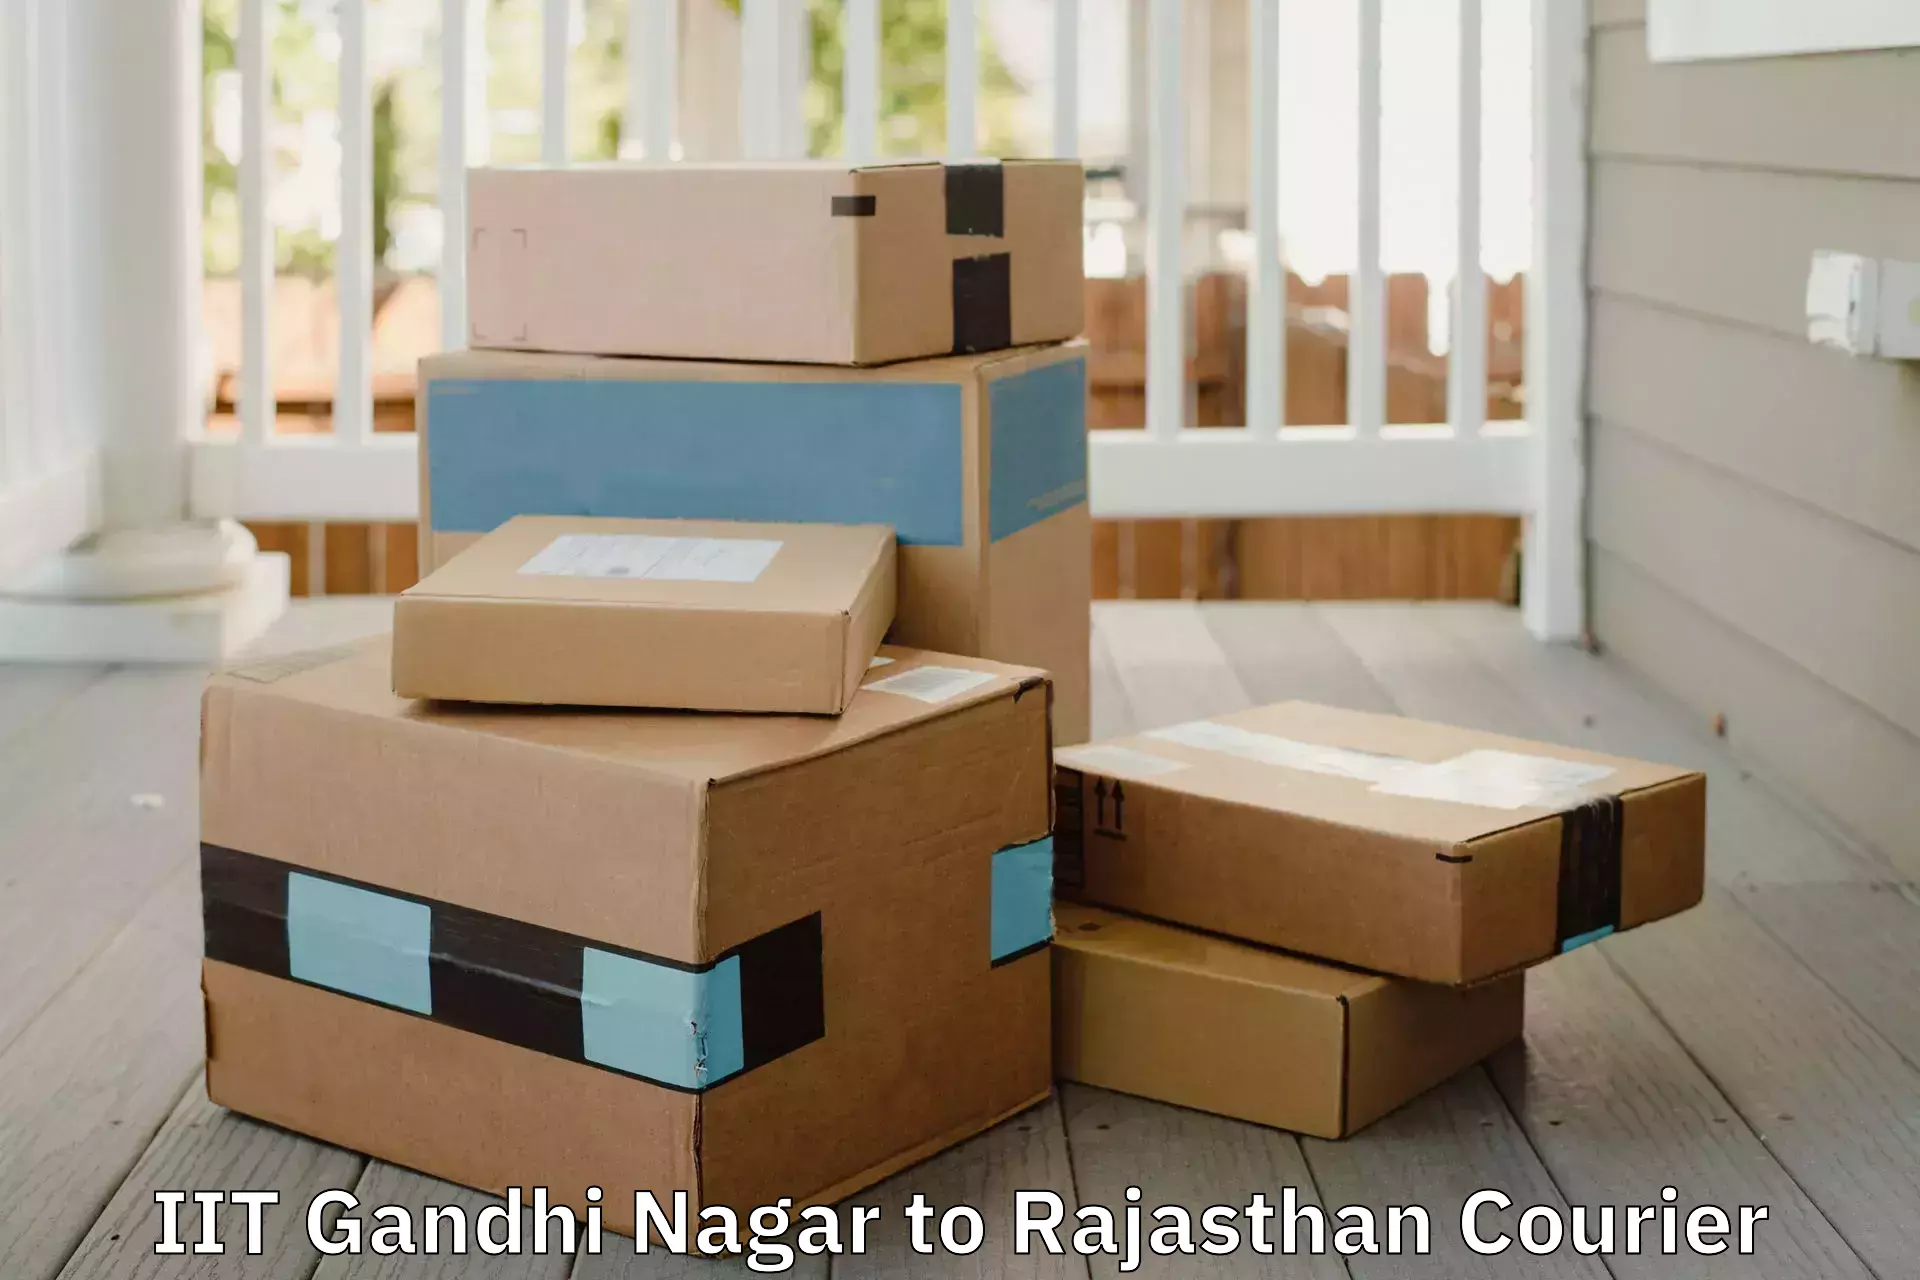 Safe household movers IIT Gandhi Nagar to Rajasthan